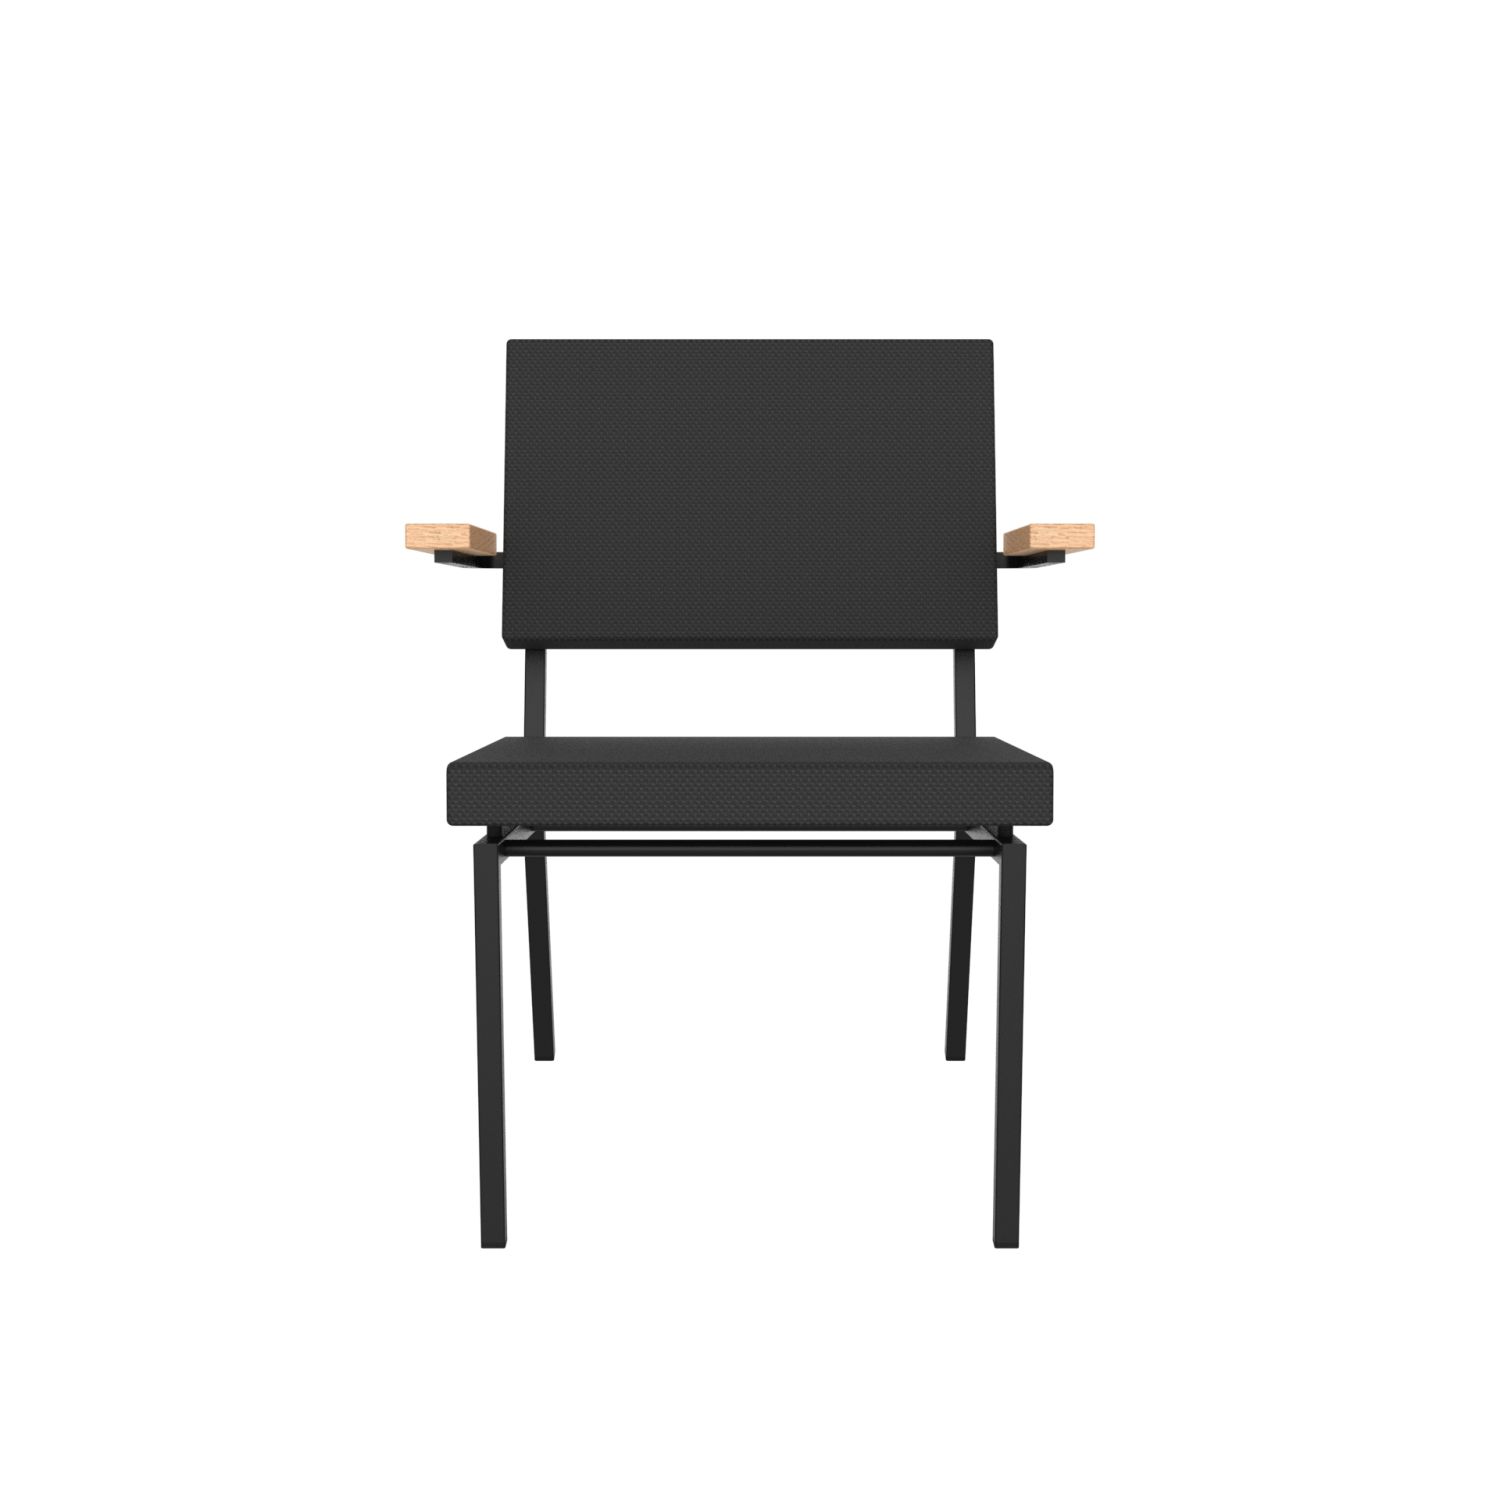 lensvelt gerrit veenendaal low chair with armrests havana black 090 price level 0 black frame ral9005 hard leg ends